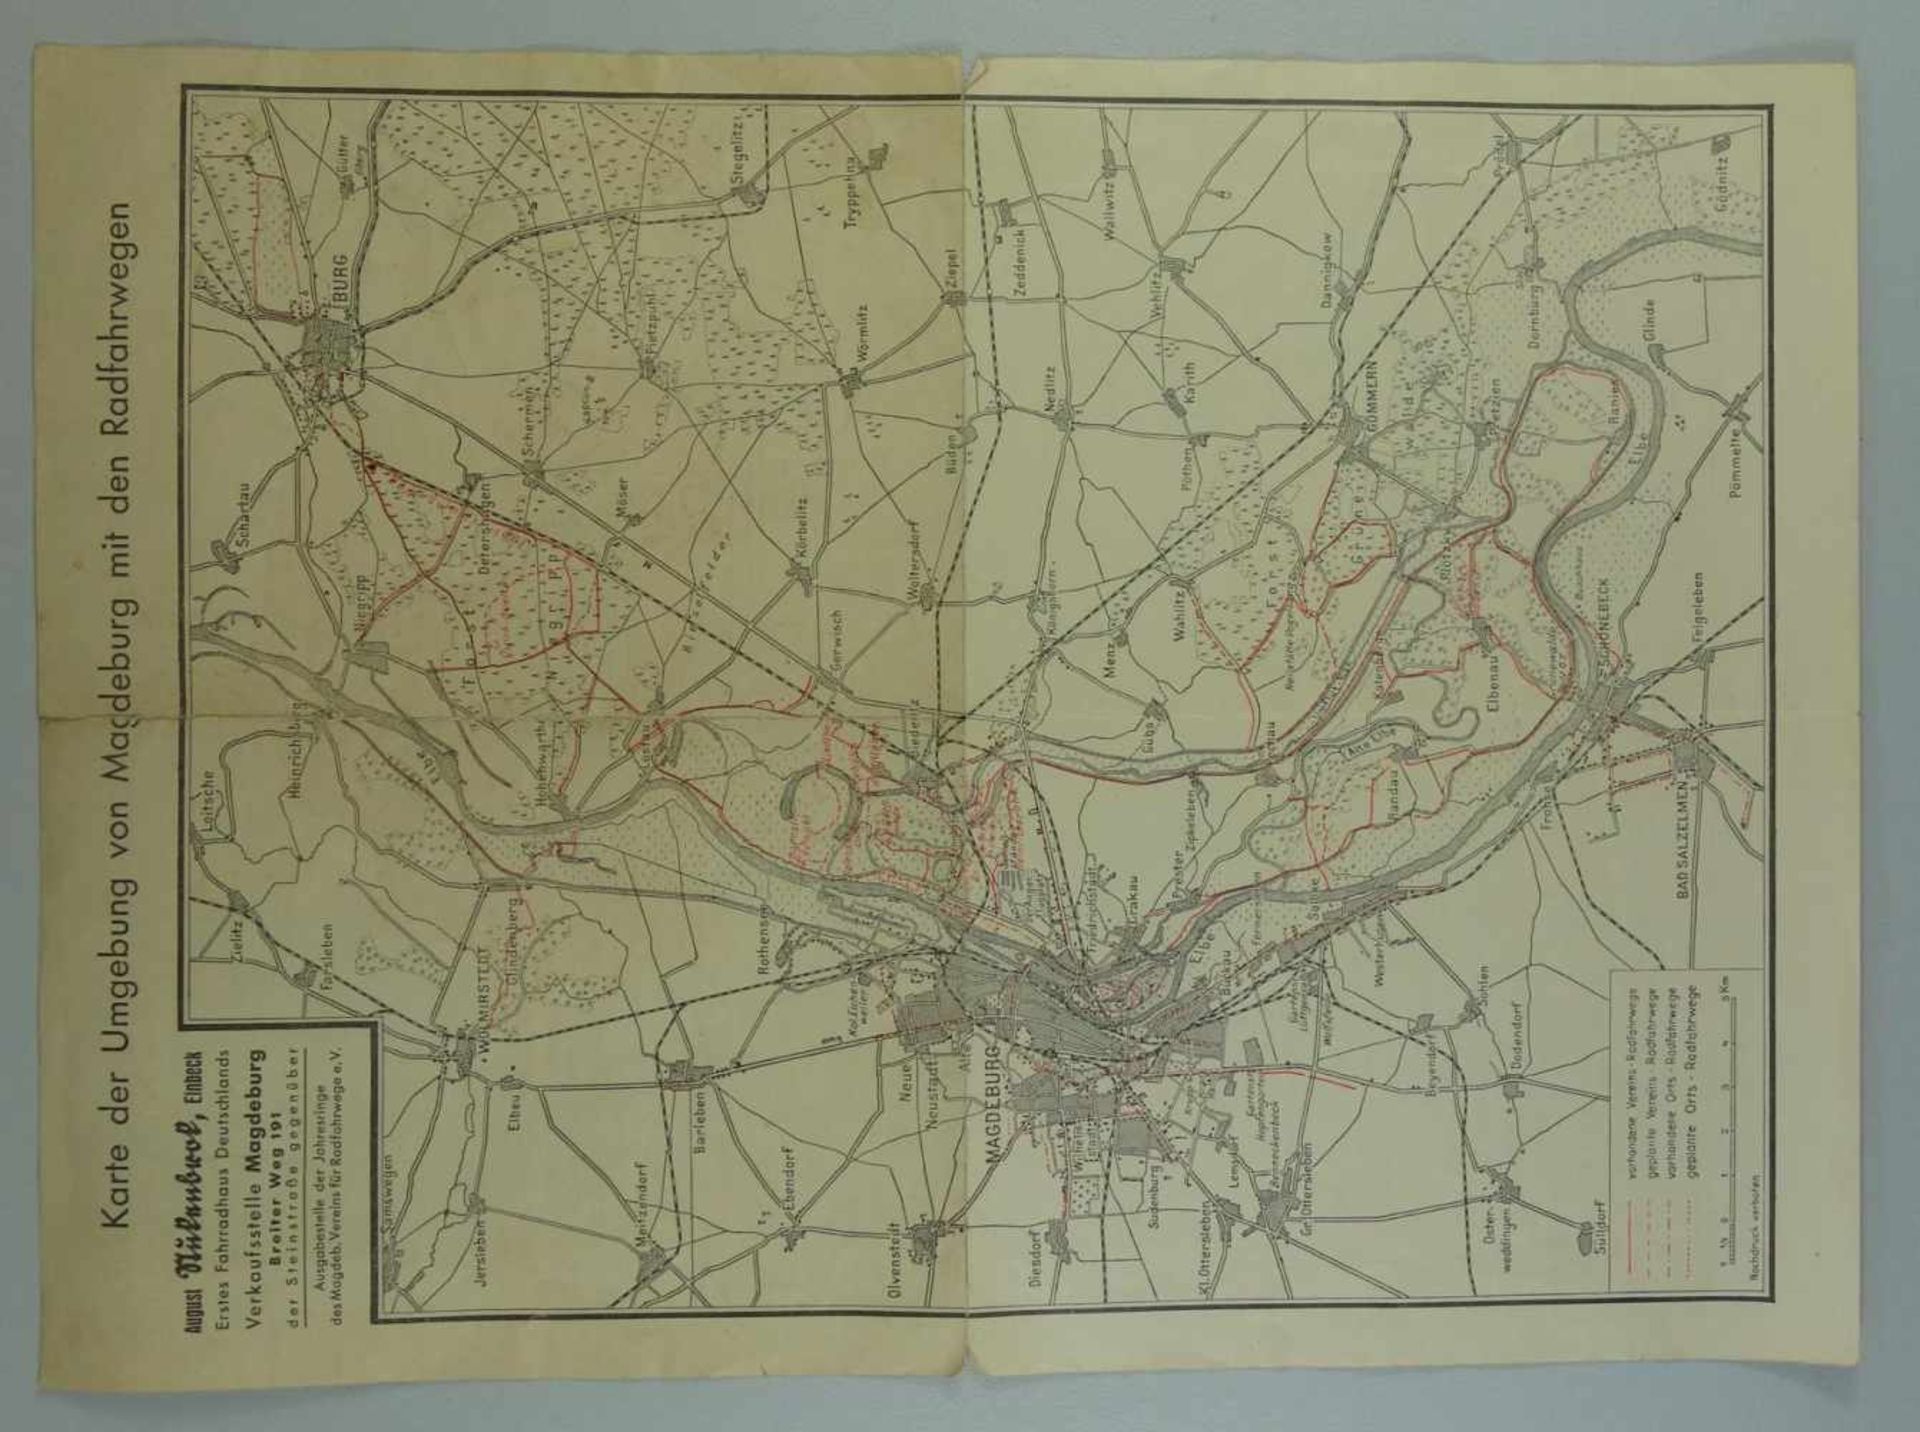 Karte der Umgebung von Magdeburg mit den Radfahrwegen, 20/30er Jahrerückseitig Werbung der Firma